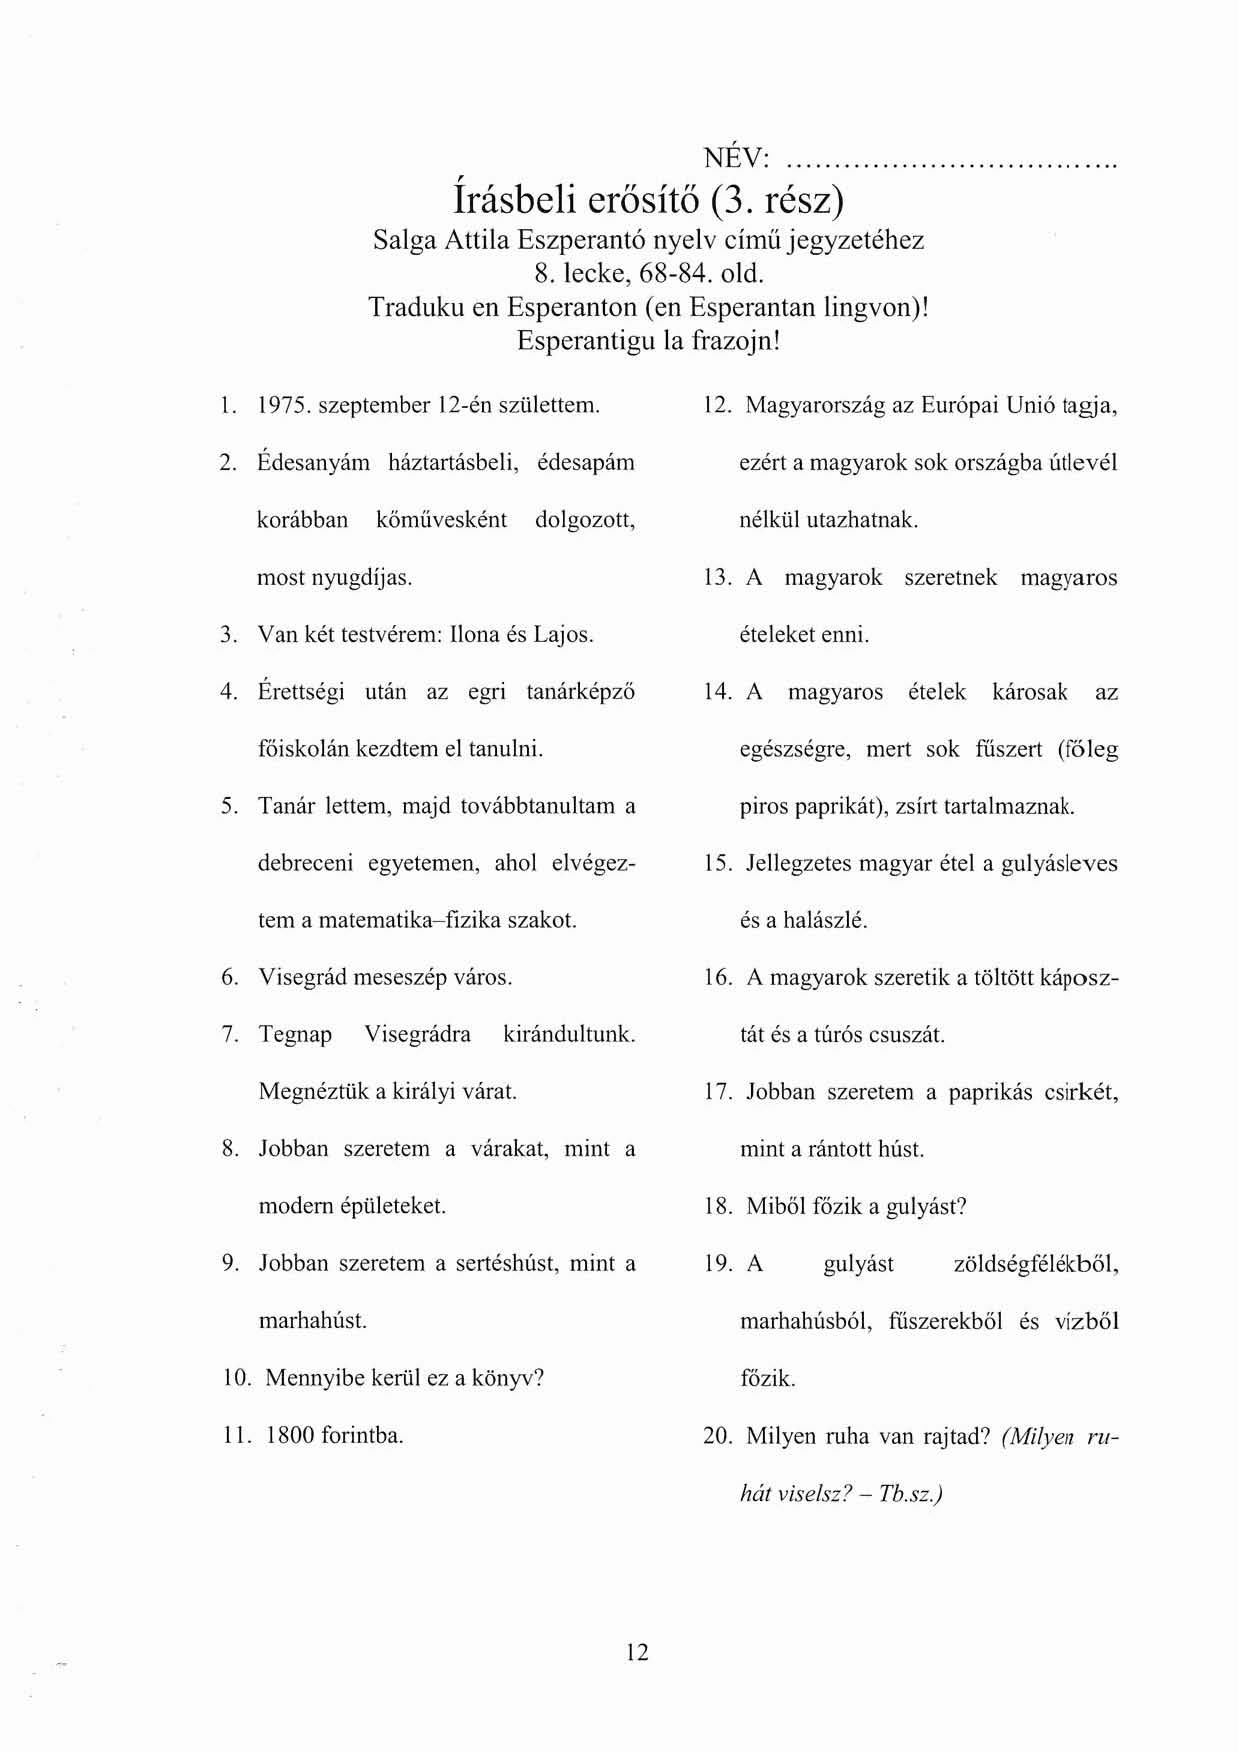 , NÉV:. Irásbeli erősítő (3. rész) Salga Attila Eszperantó nyelv című jegyzetéhez 8. lecke, 68-84 old. Tradllku en Esperanton (en Esperantan lingvon)! Esperantigll la frazojn! l. 1975.